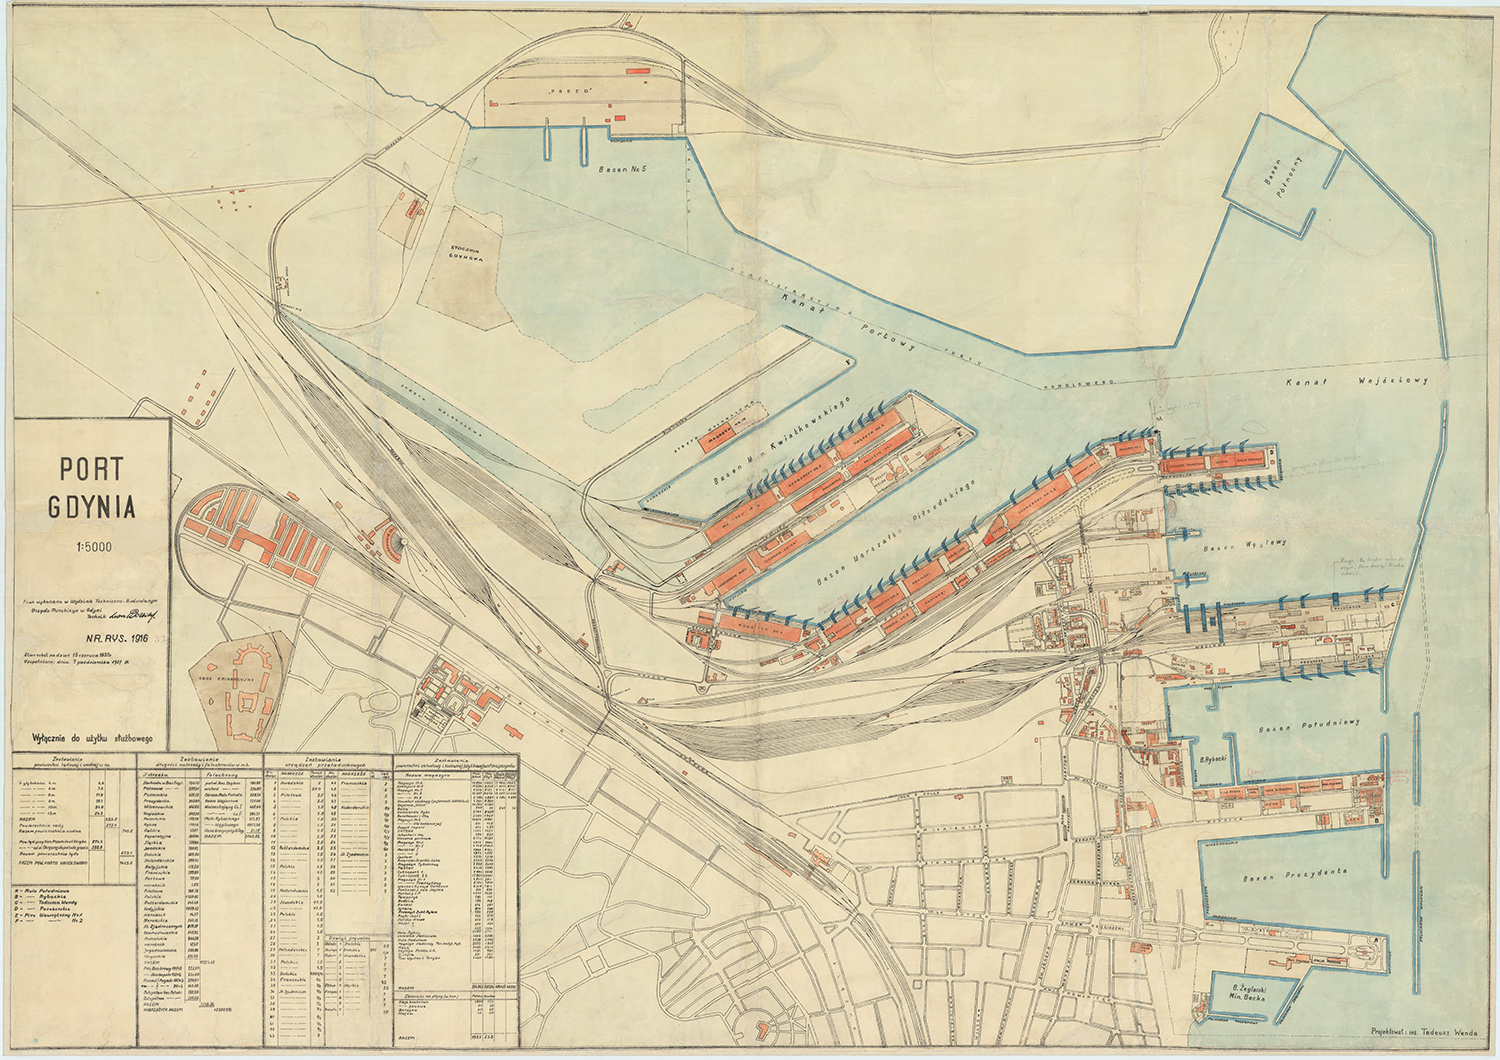 Plan budowy portu w Gdyni ze zbiorów Muzeum Miasta Gdyni.